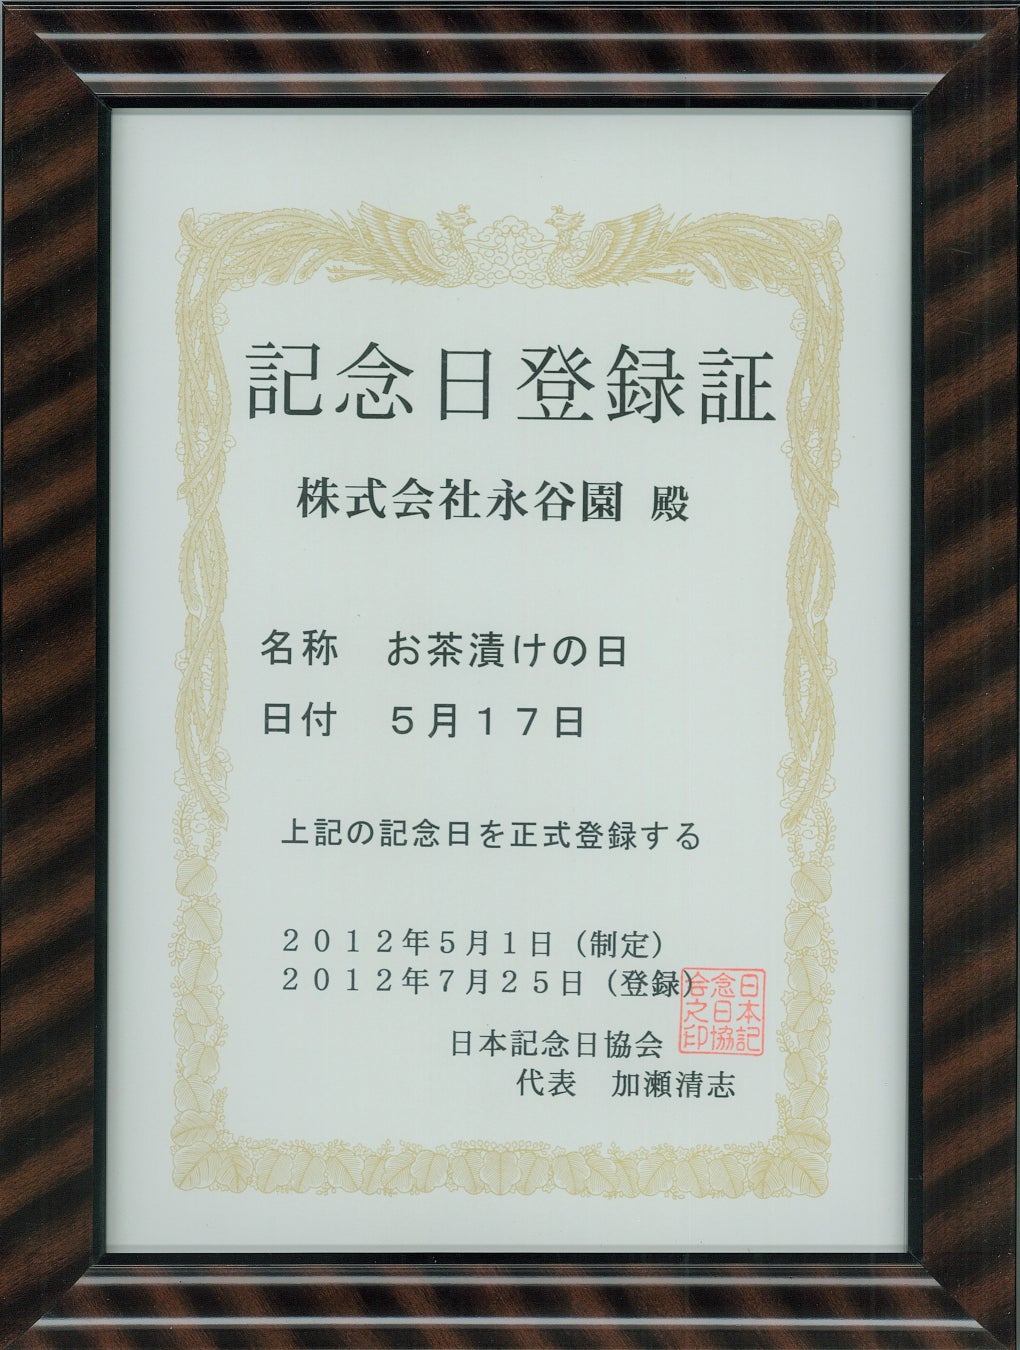 5月17日は「お茶漬けの日」！　2012 年に永谷園の「お茶づけ海苔」が発売60 周年 を迎えたことを記念して登録・制定されました。